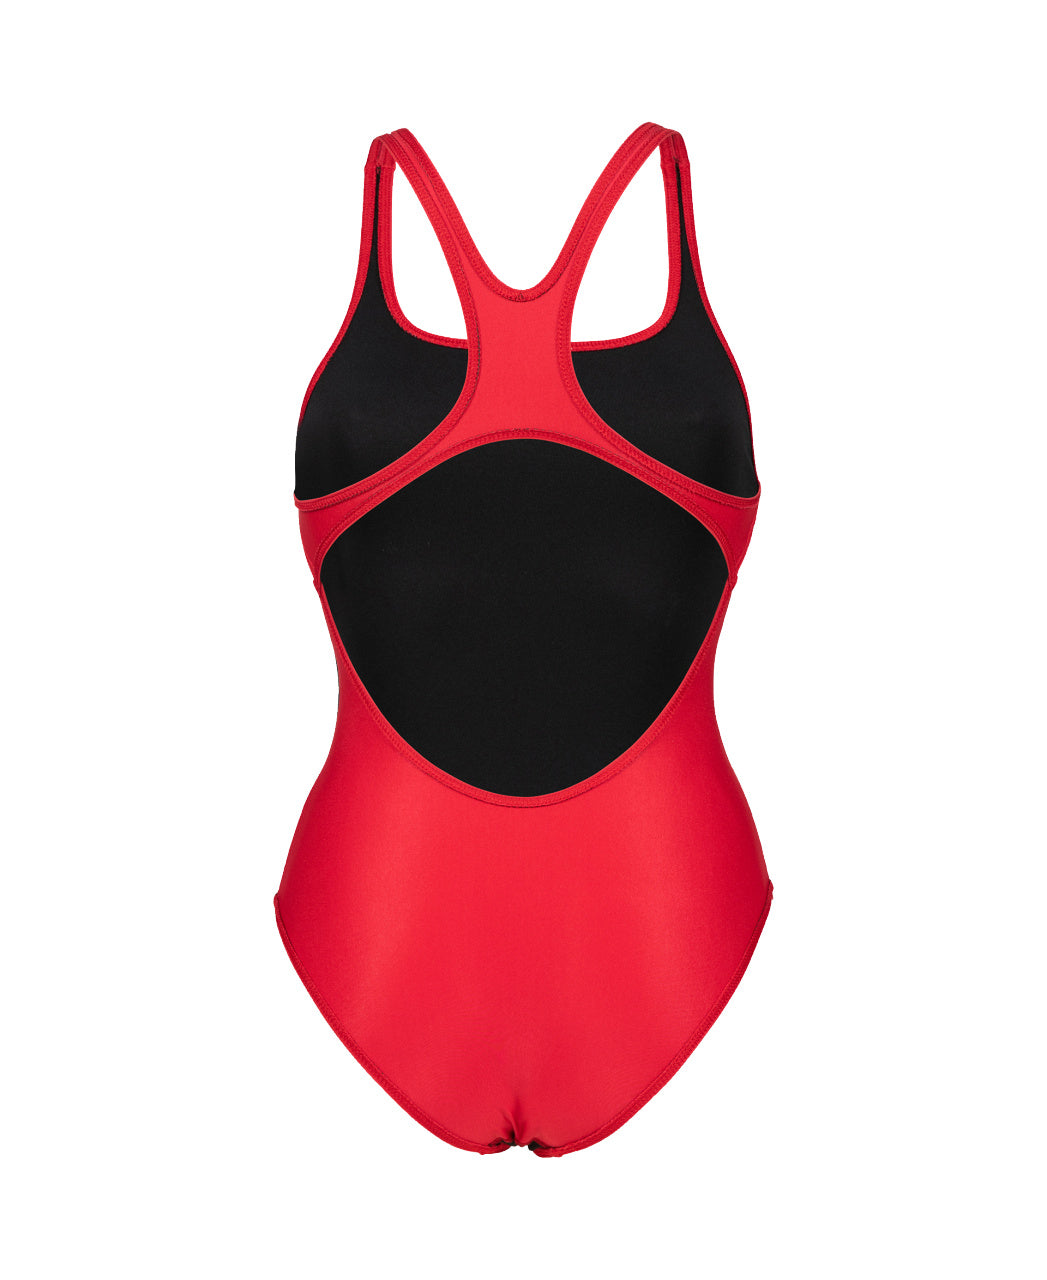 Maillot de bain - femme 1 Pièce Arena Team Swimsuit Swim Pro Solid 004760